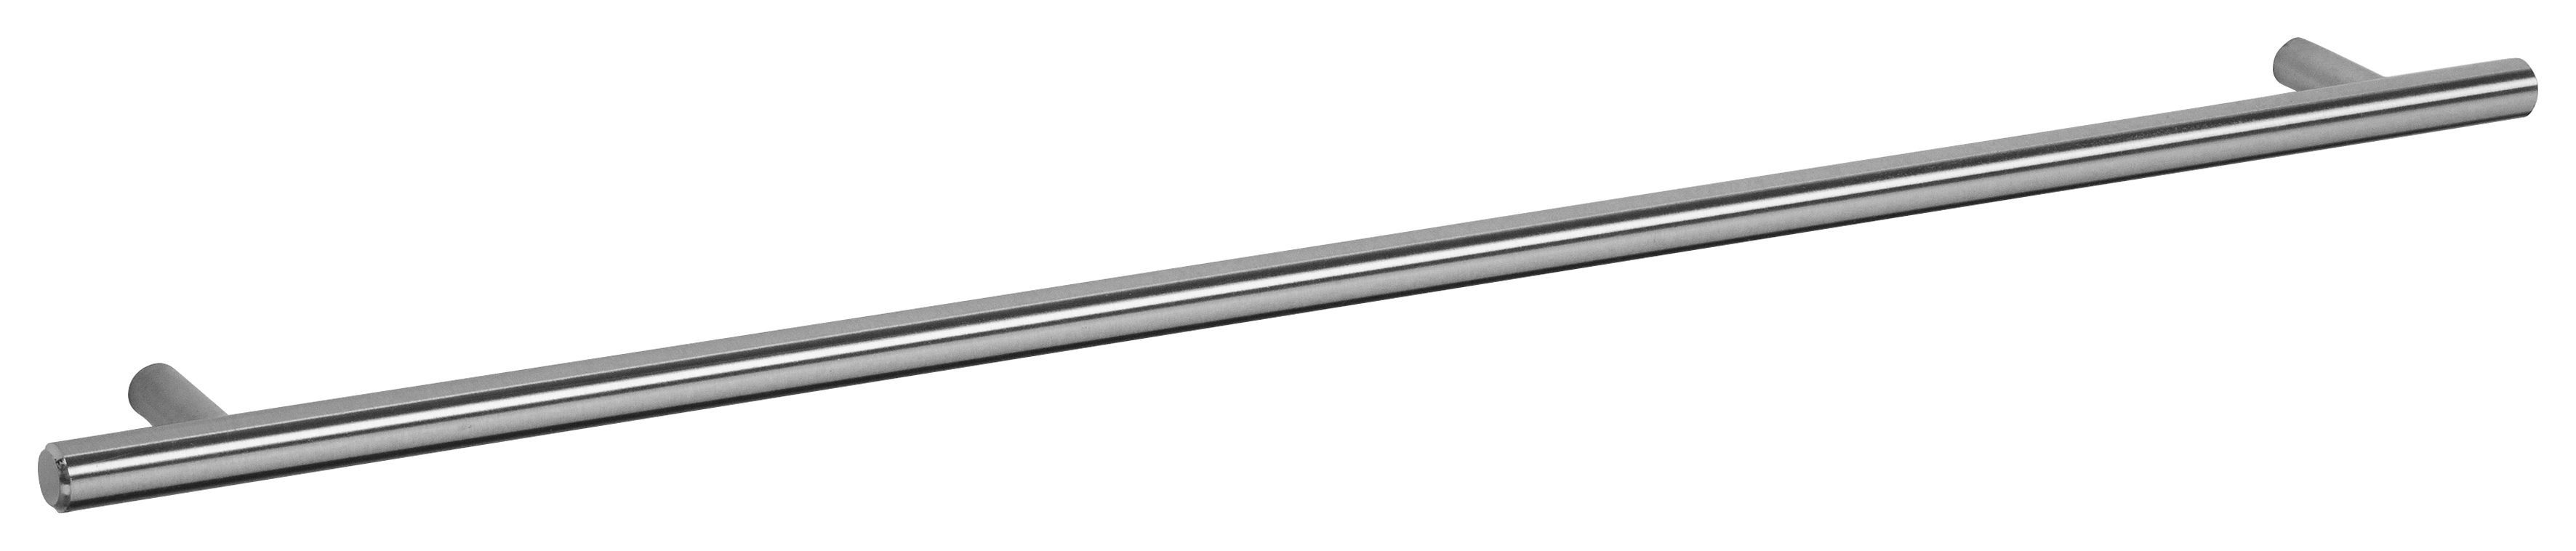 Klappe | Bern Metallgriff mit inkl. Klapphängeschrank OPTIFIT basaltgrau/akaziefarben akaziefarben Dämpfer, Breite 1 60 cm,